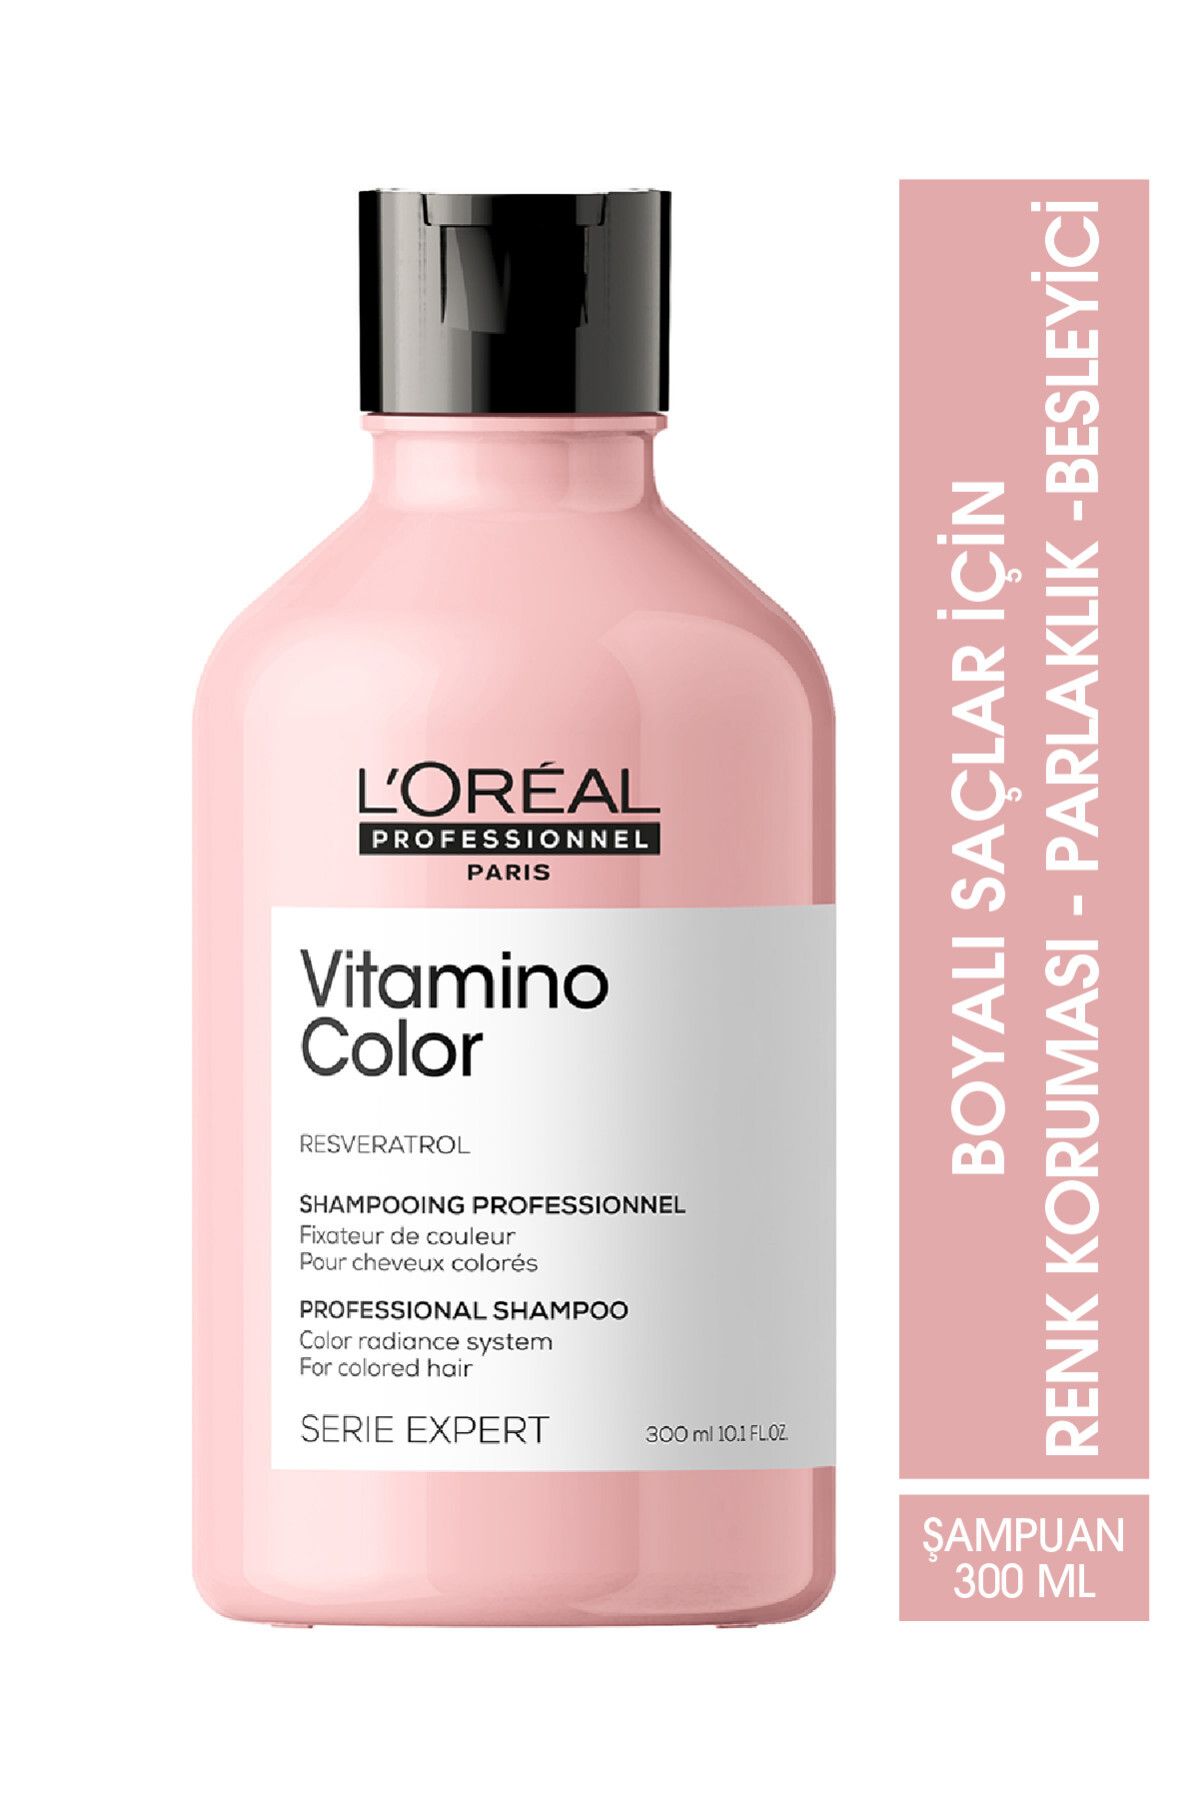 L'oreal Professionnel Serie Expert Vitamino Color Boyalı Saçlar Için Renk Koruyucu Şampuan 300ml